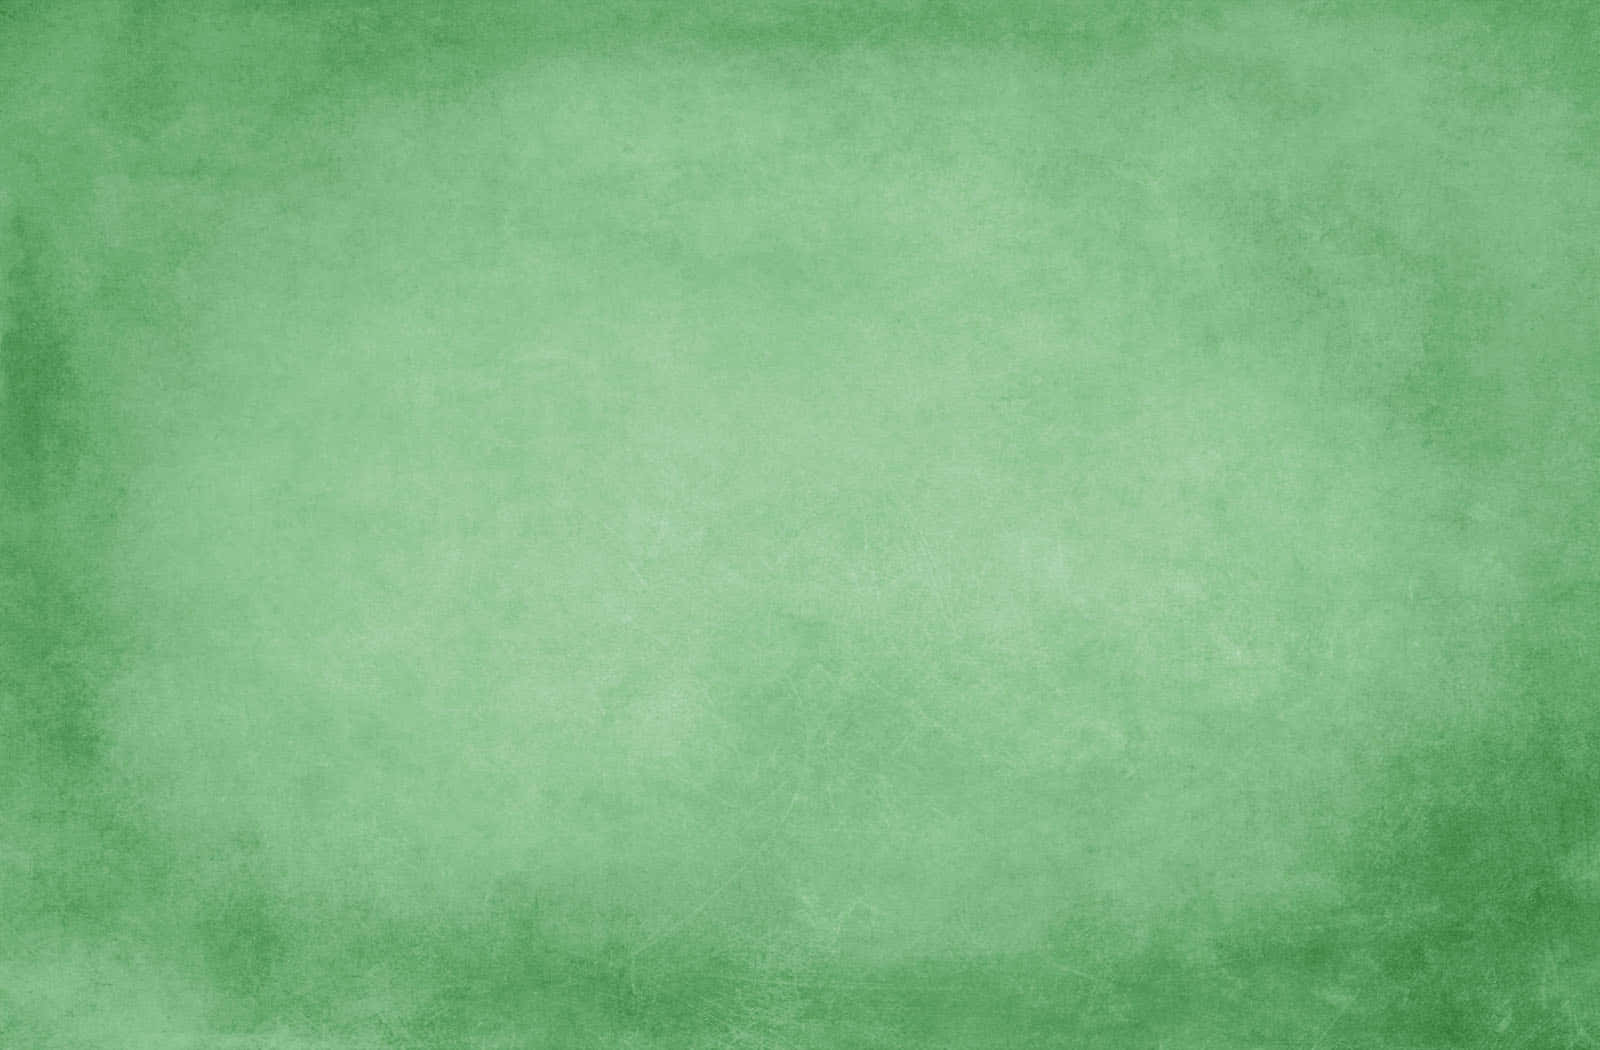 Einlebhaftes Einfarbiges Grünes Hintergrundbild